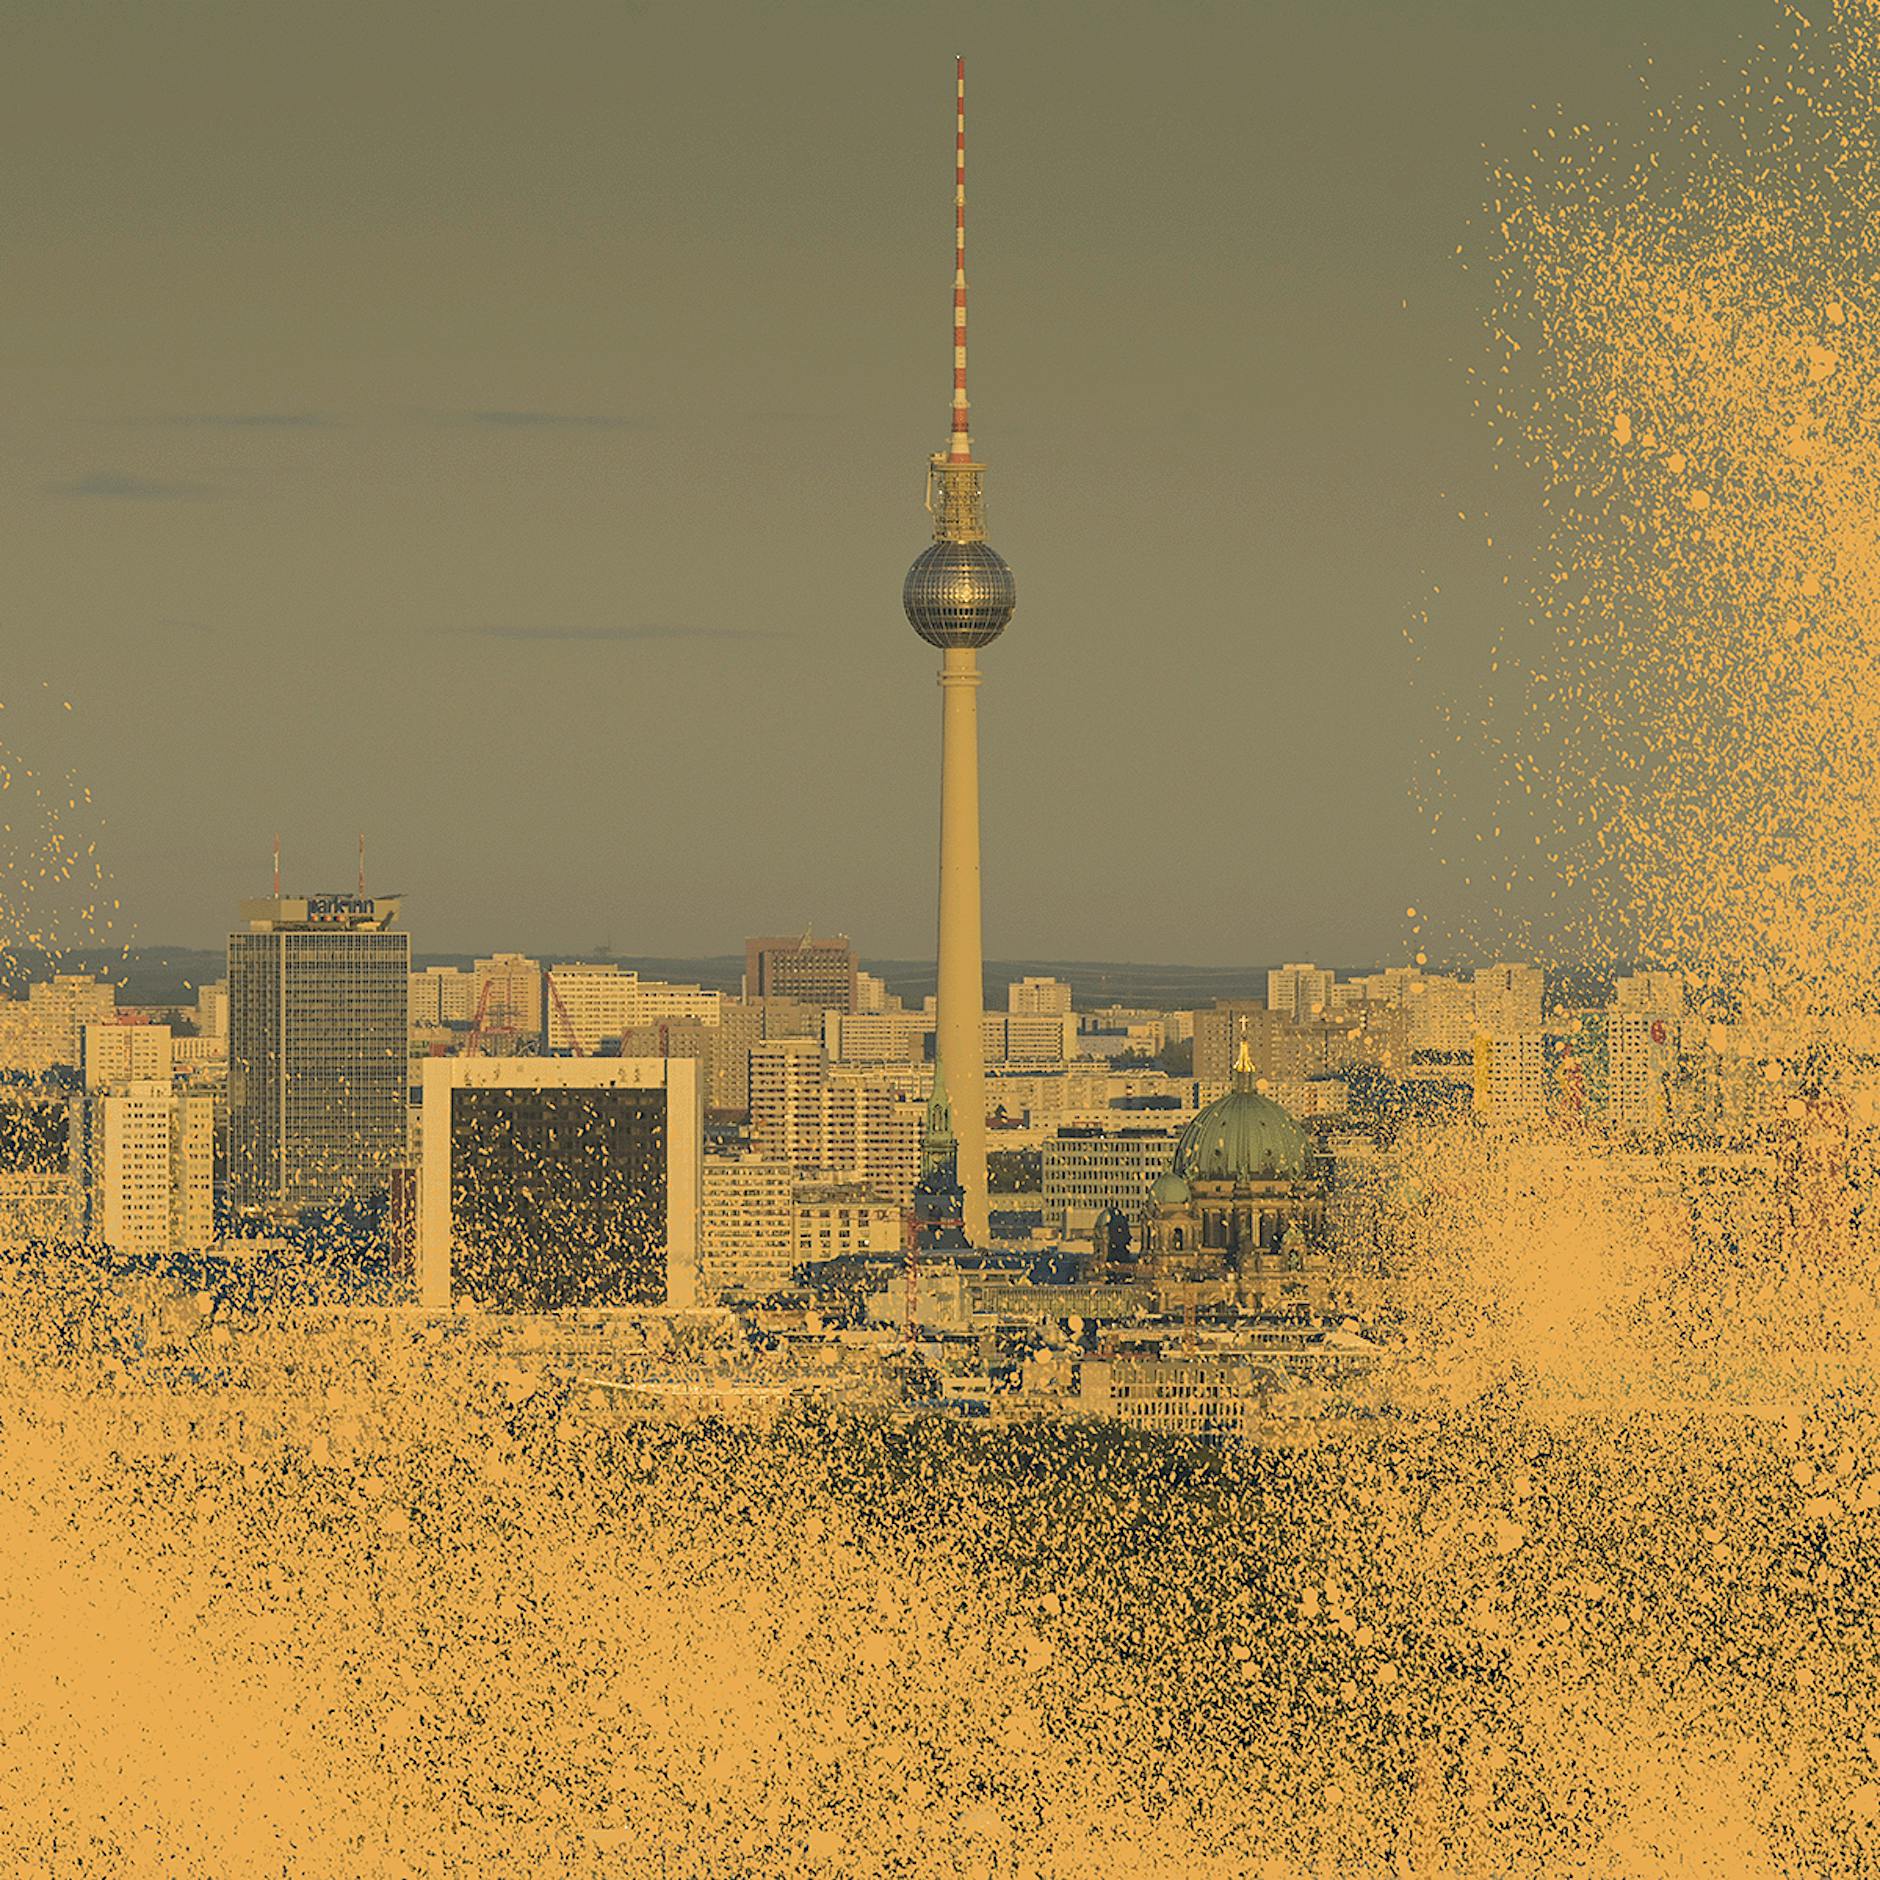 Raps, Pollen, Saharastaub: Was ist das gelbe Zeug – und wann ist es aus Berlin wieder weg?